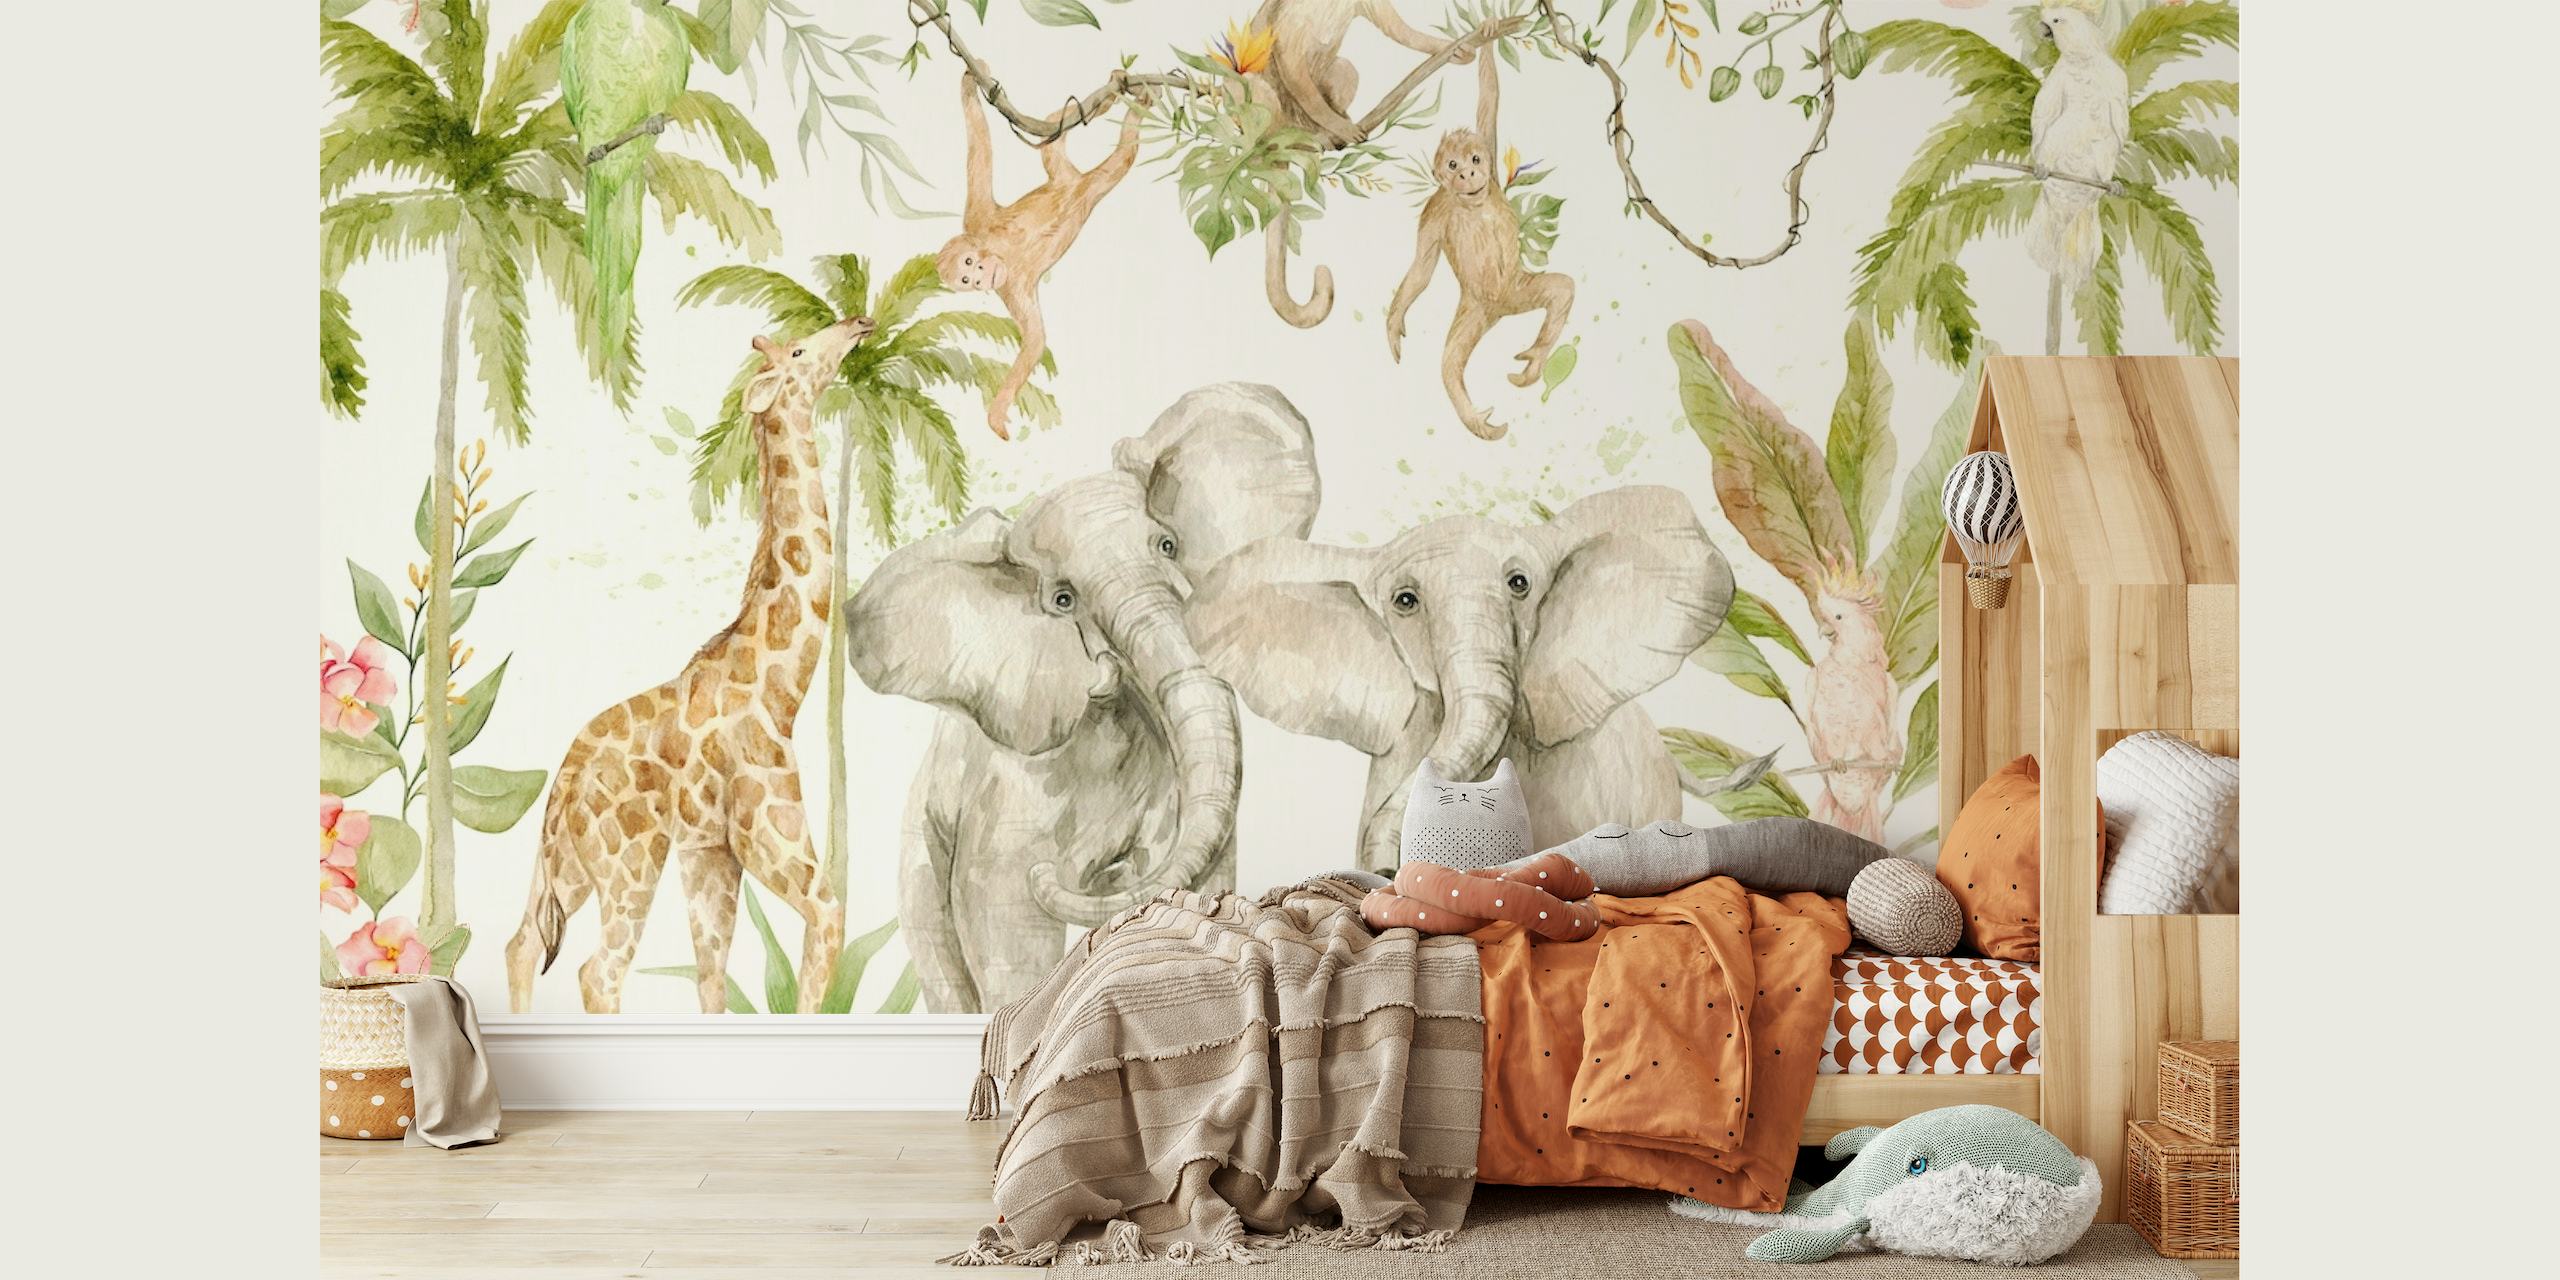 Ručno oslikana zidna slika prizora tropske džungle safarija sa slonovima, žirafama i majmunima među zelenilom